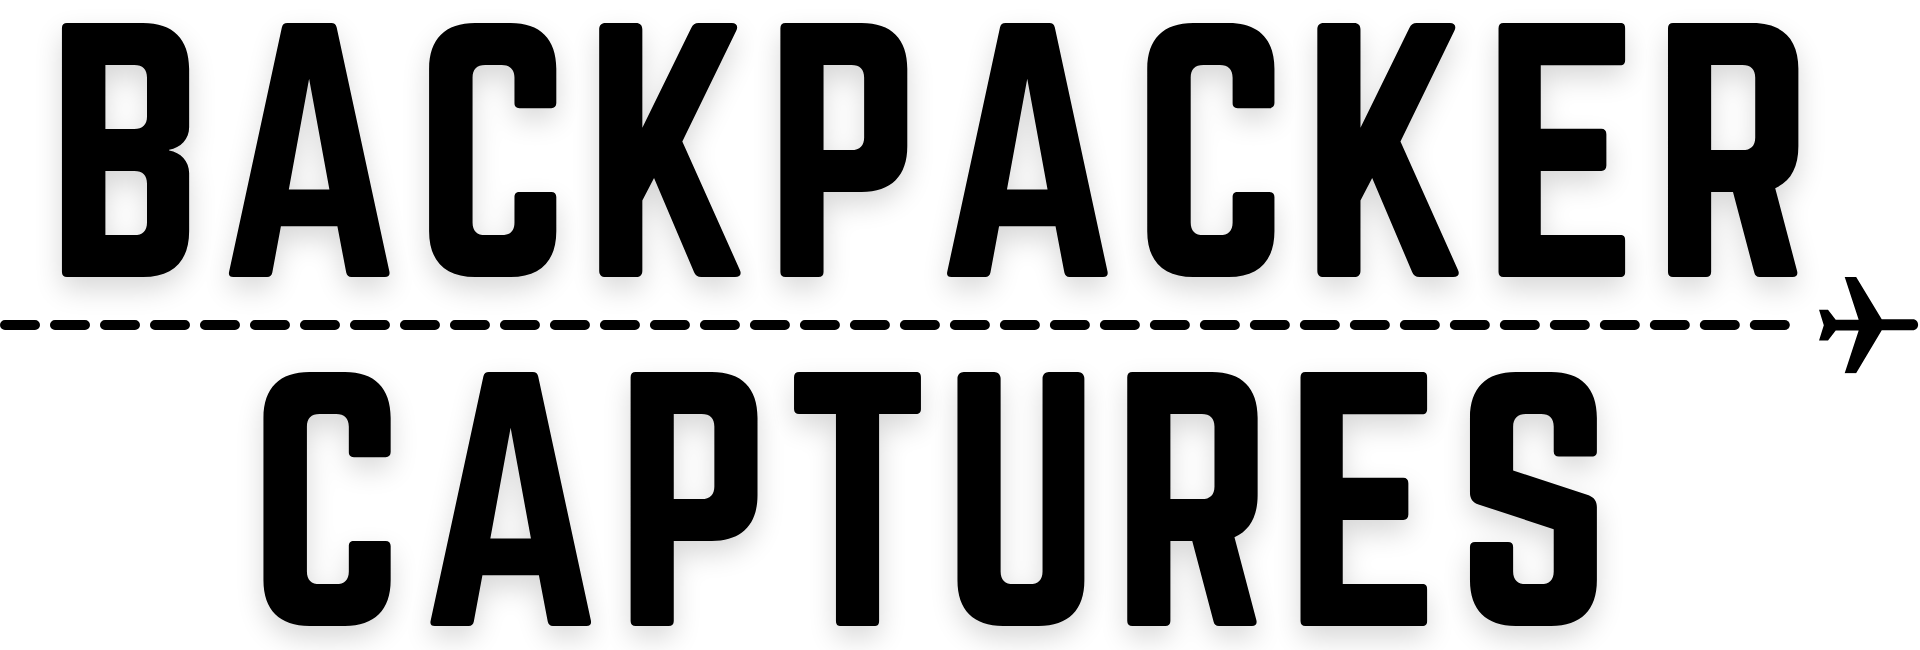 Backpacker Captures Logo